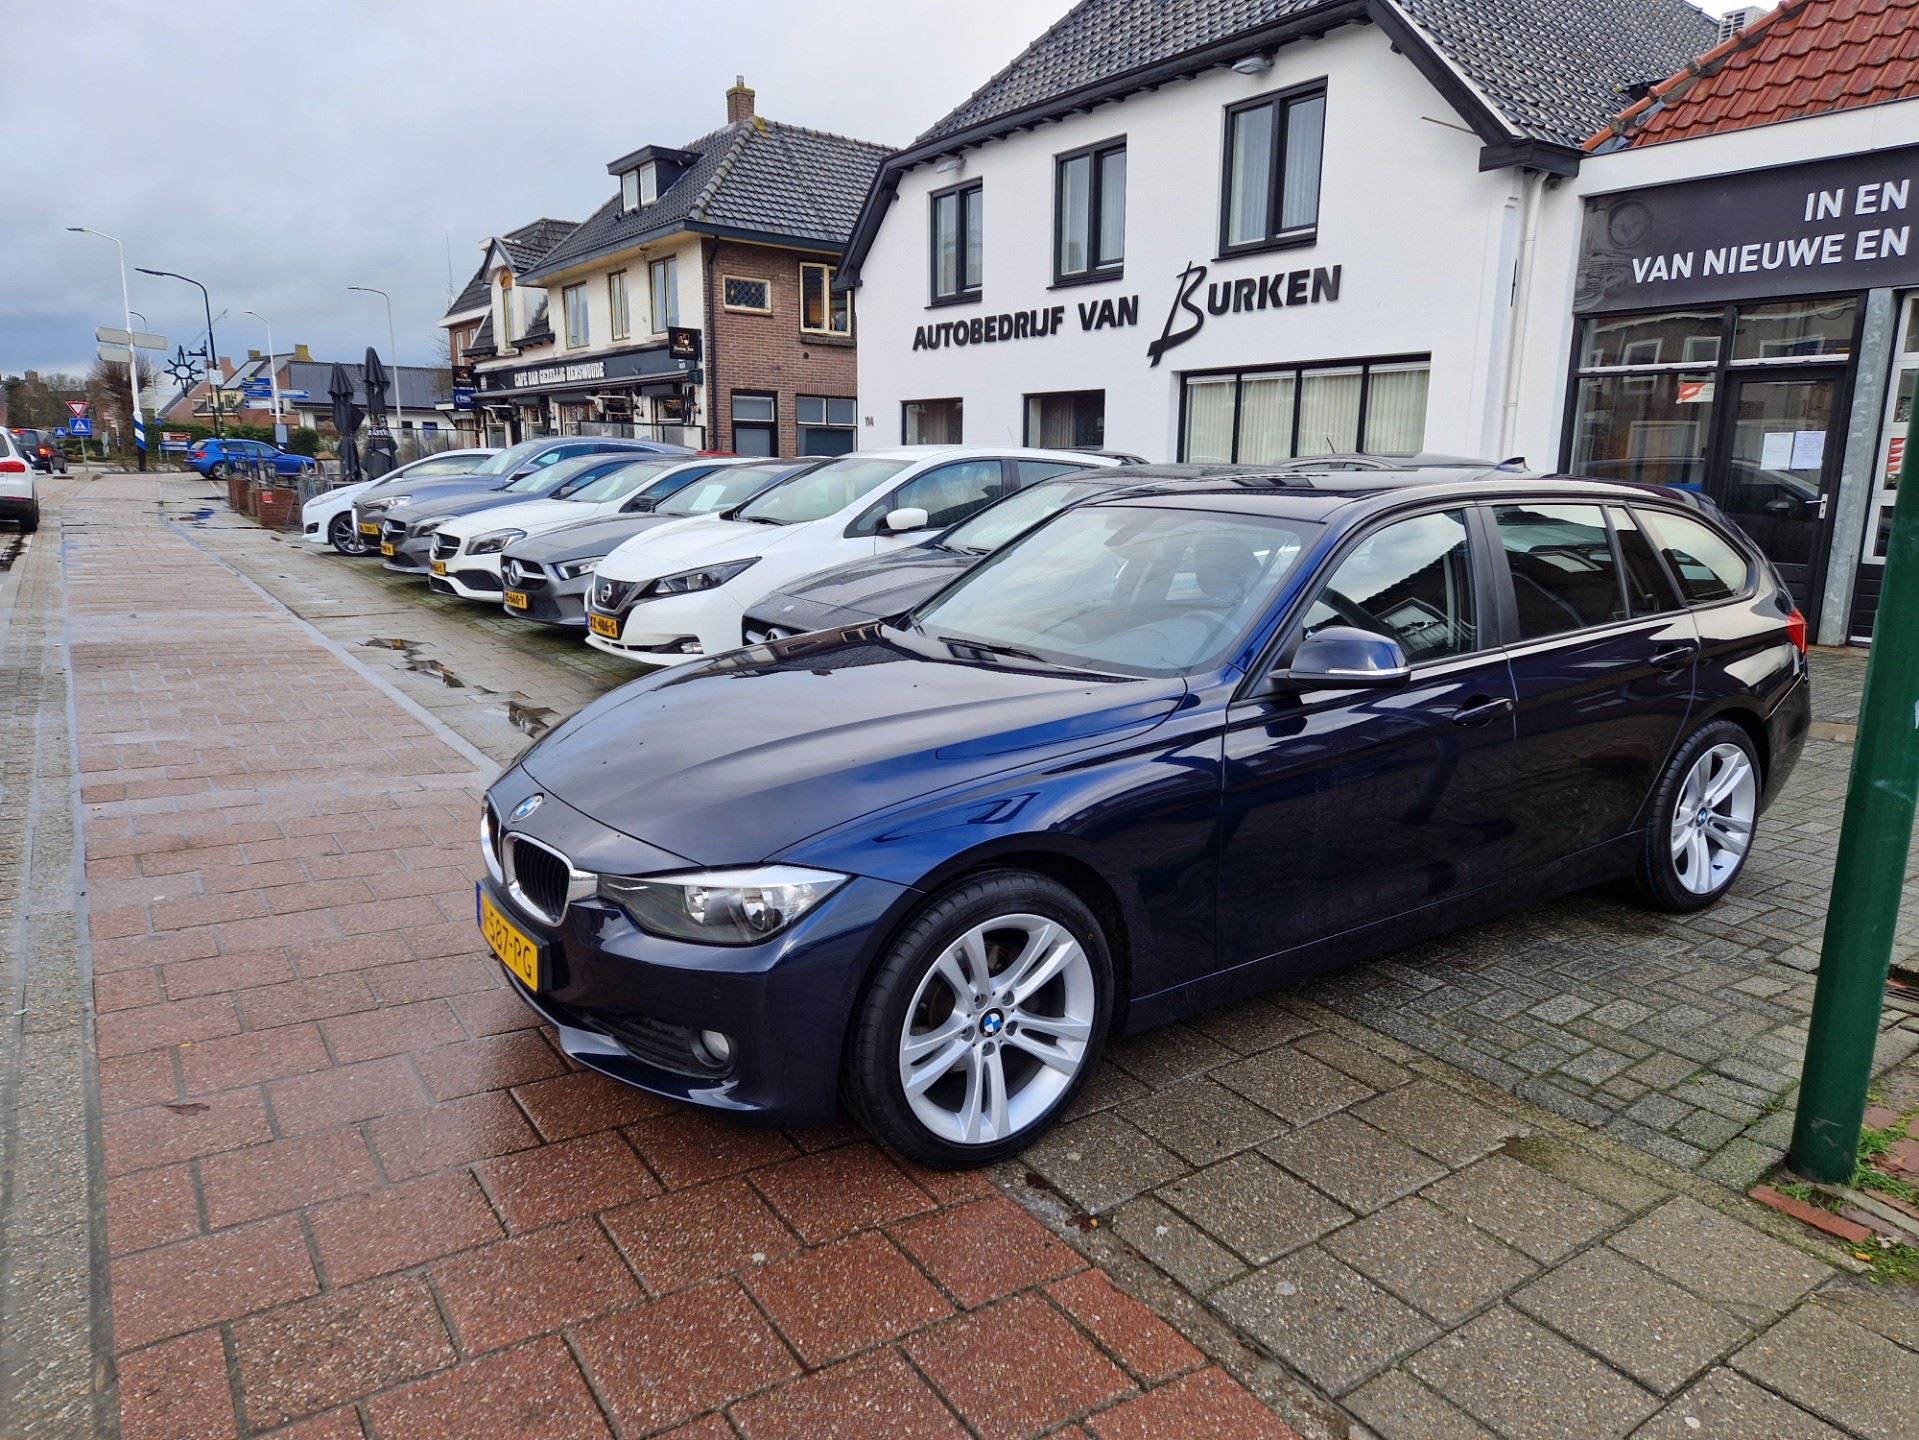 BMW 3-serie Touring occasion - Autobedrijf van Burken